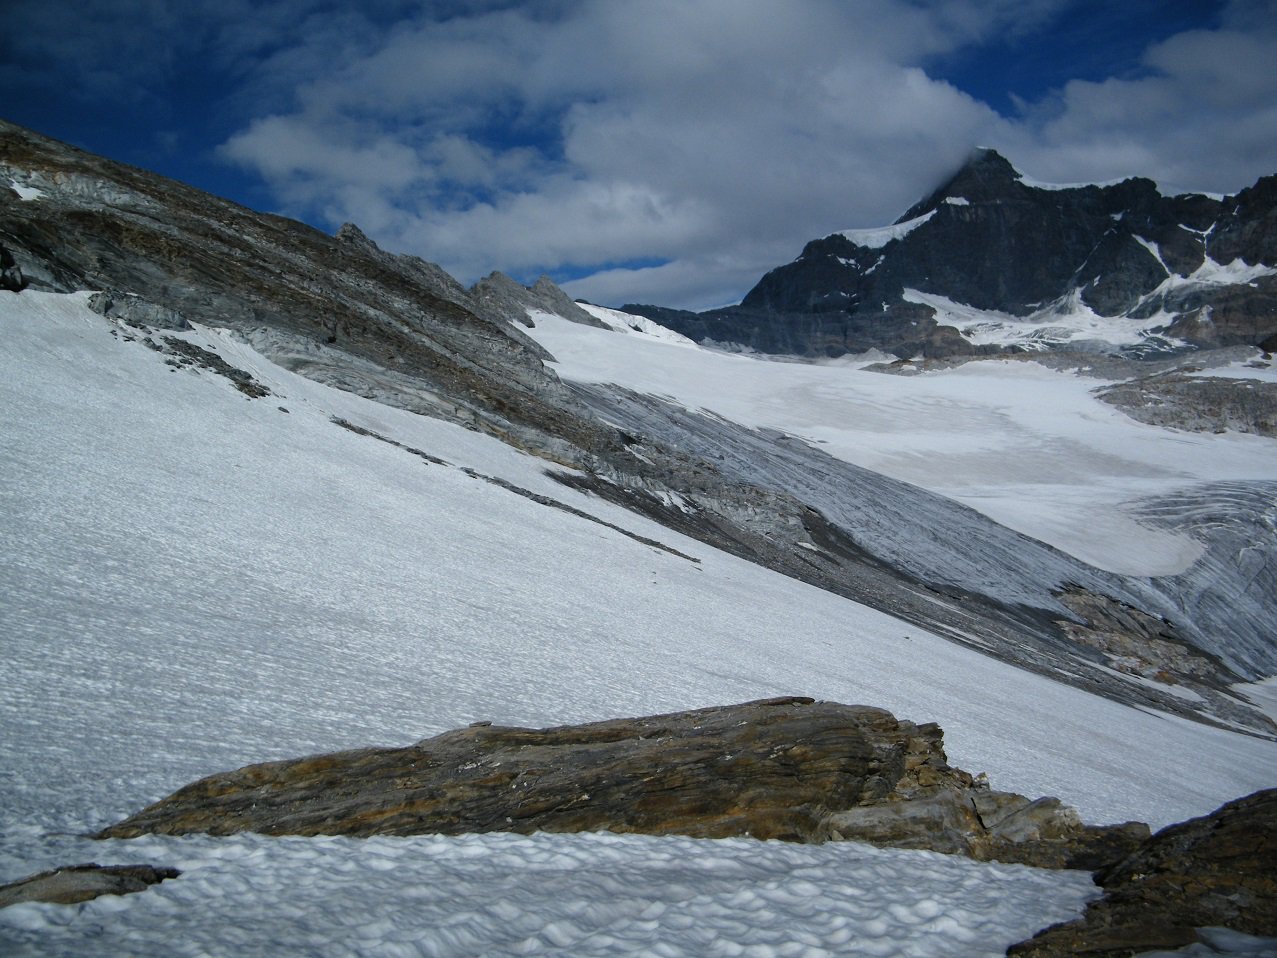 La parte bassa del ghiacciaio.